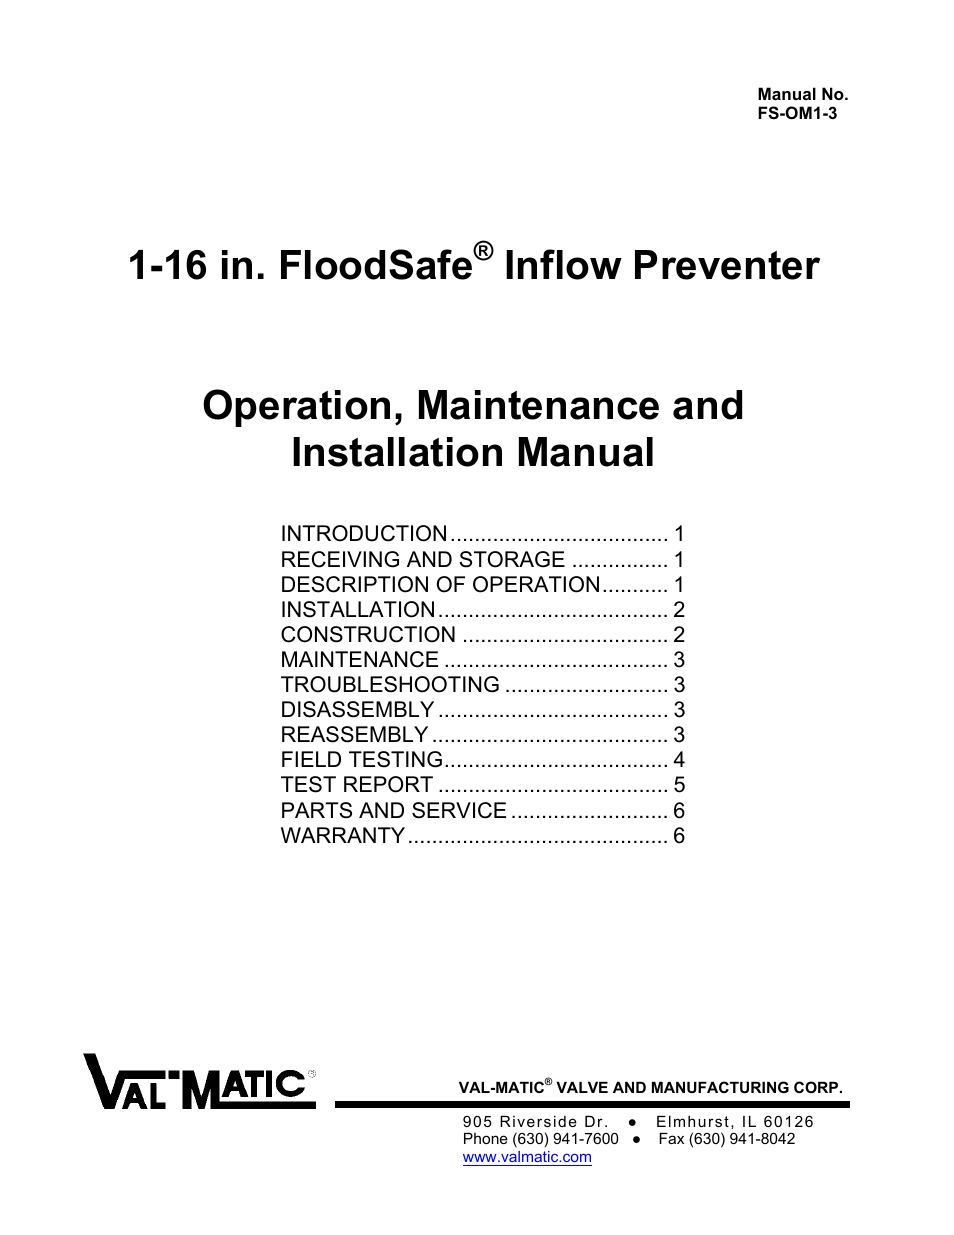 1-16 in. FloodSafe Inflow Preventer